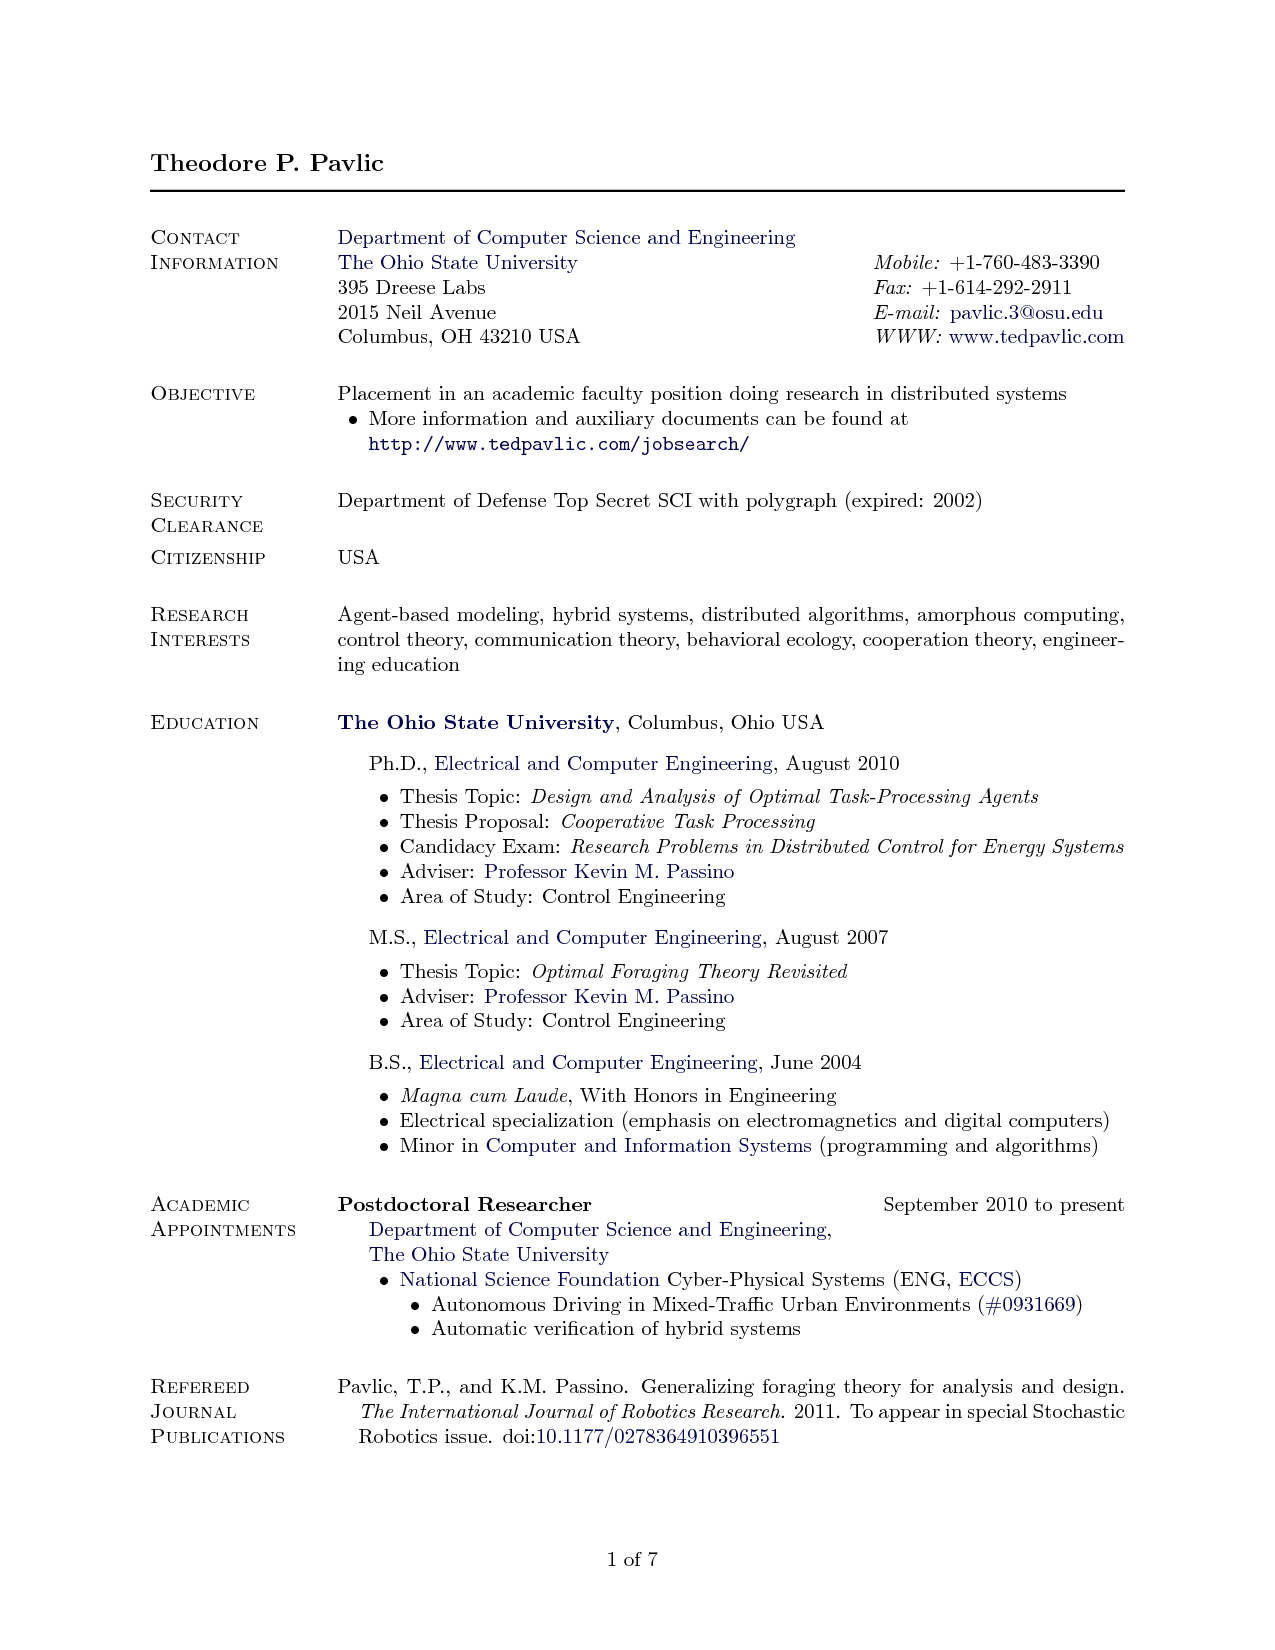 Sample resume in computer engineering